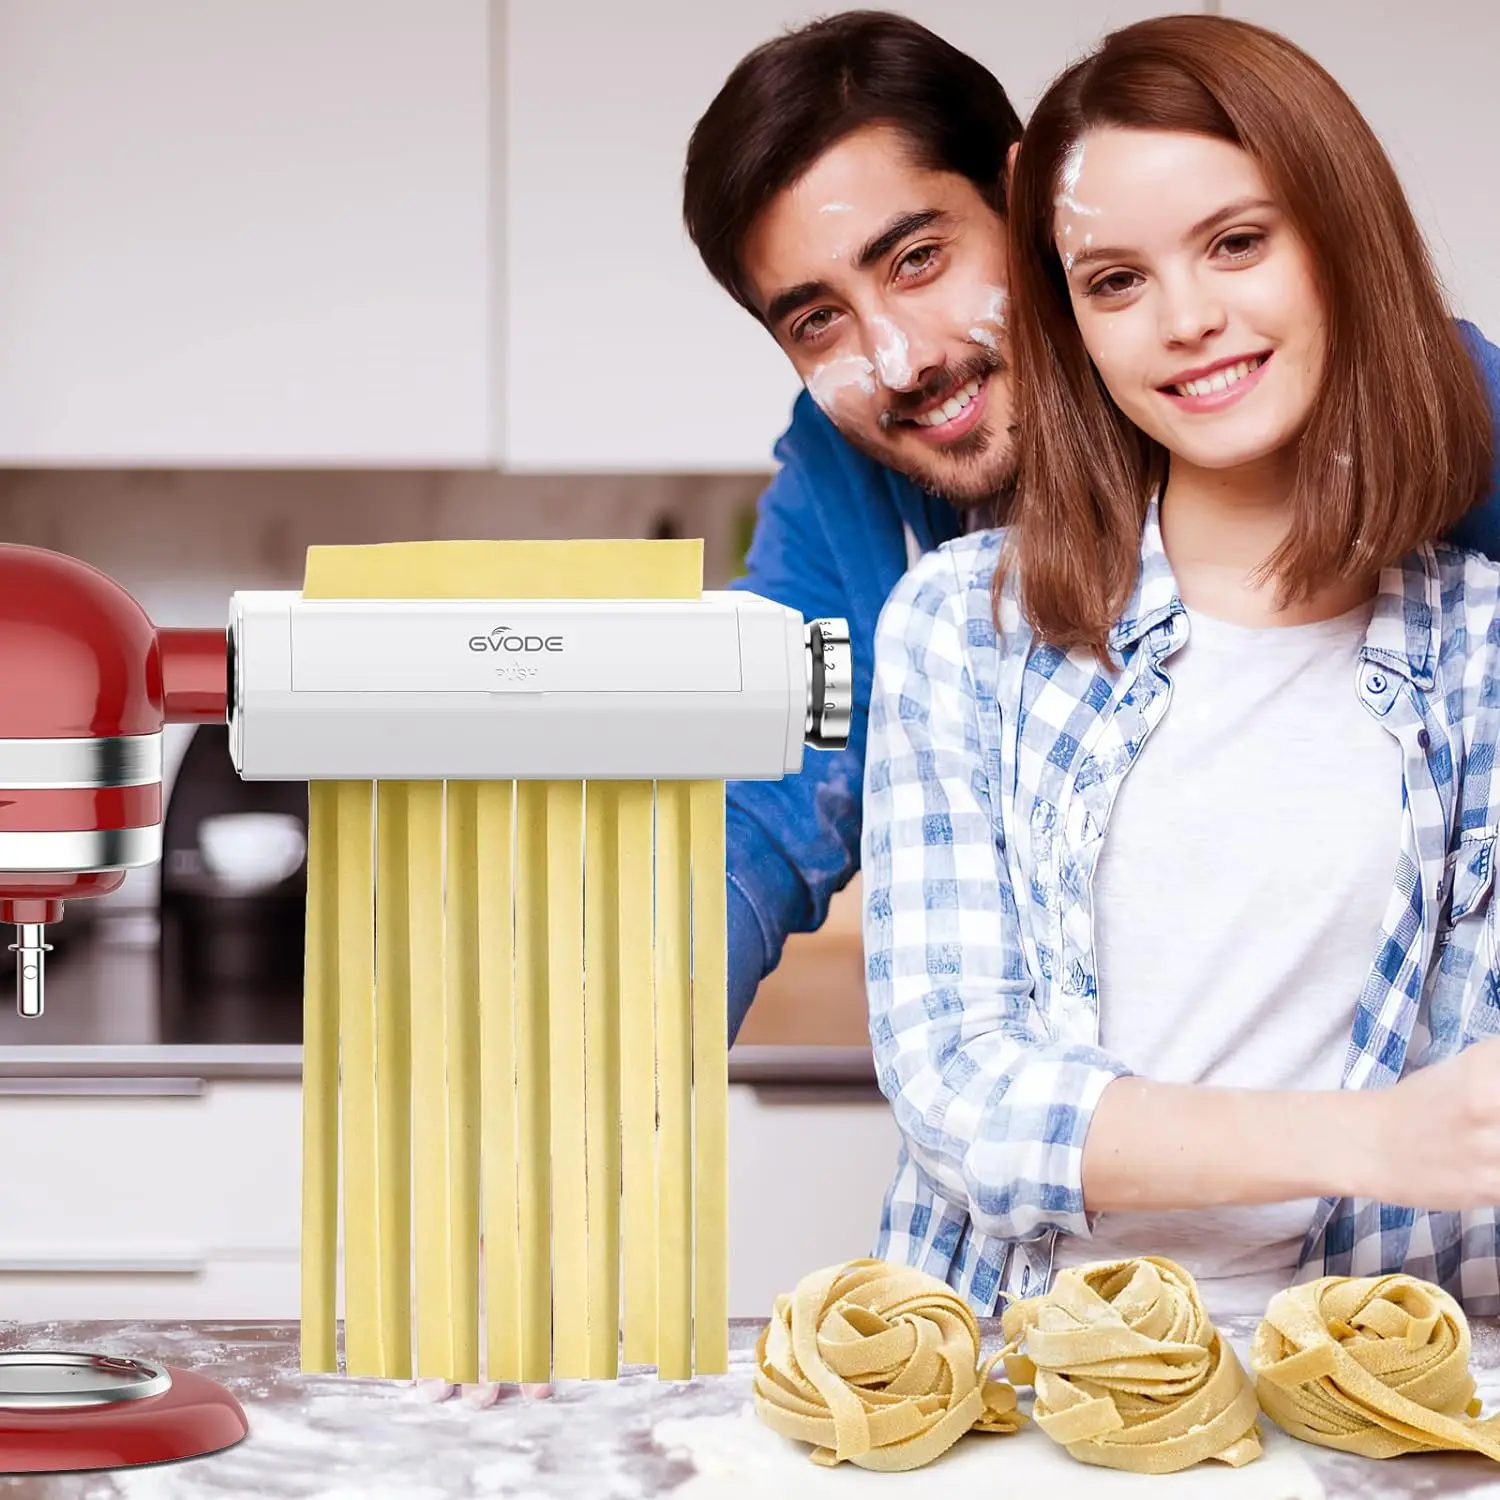 KitchenAid Stand Mixer Attachment: 3-in-1 Pasta Maker